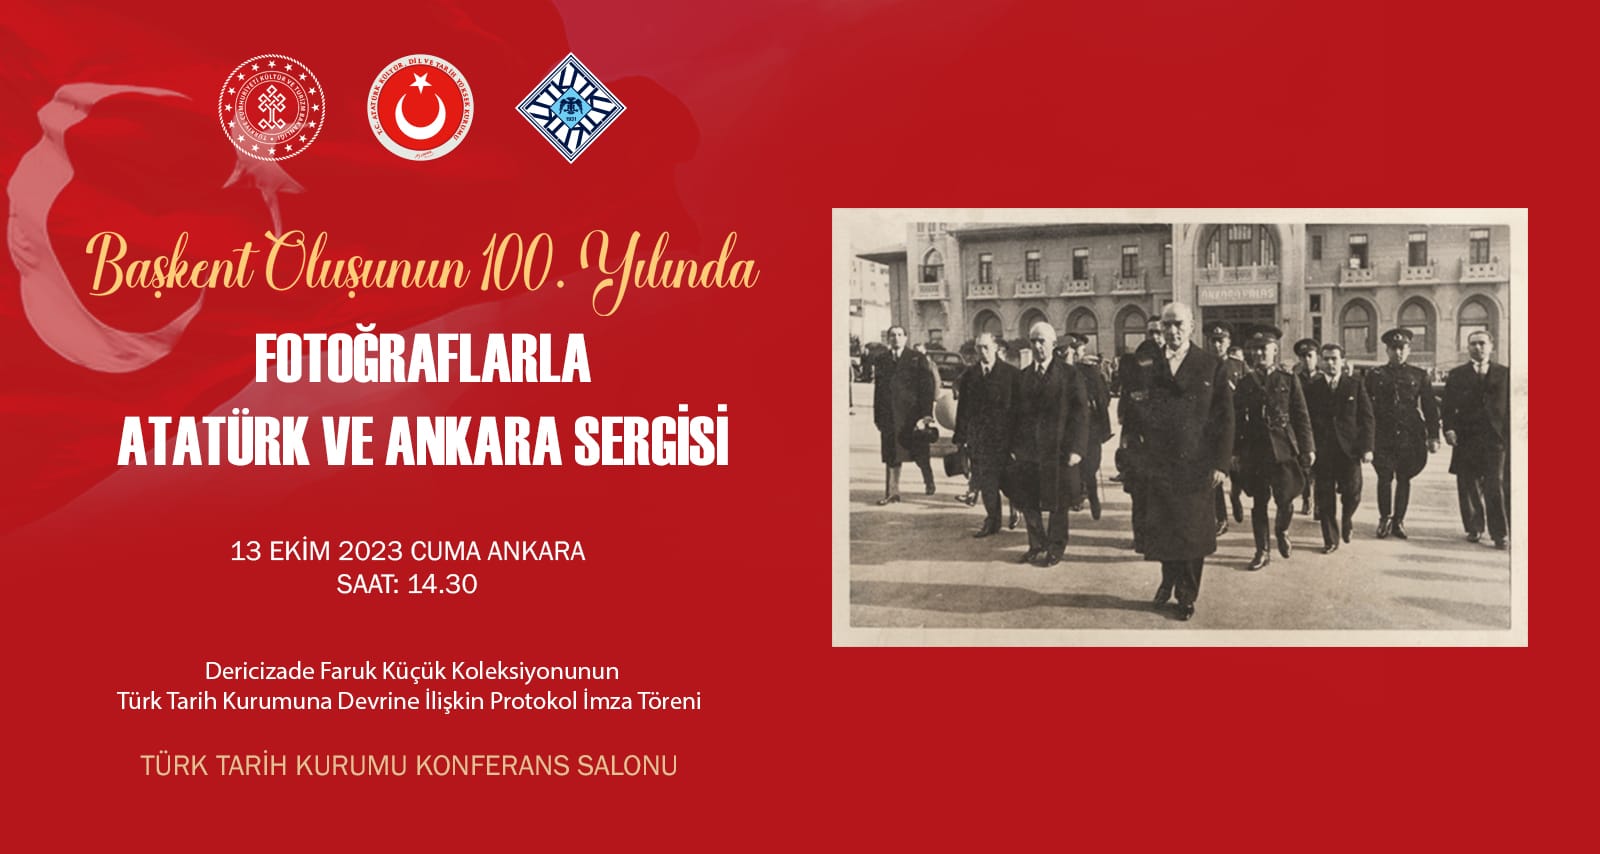  Başkent Oluşunun 100. Yılında Fotoğraflarla Atatürk ve Ankara Sergisi